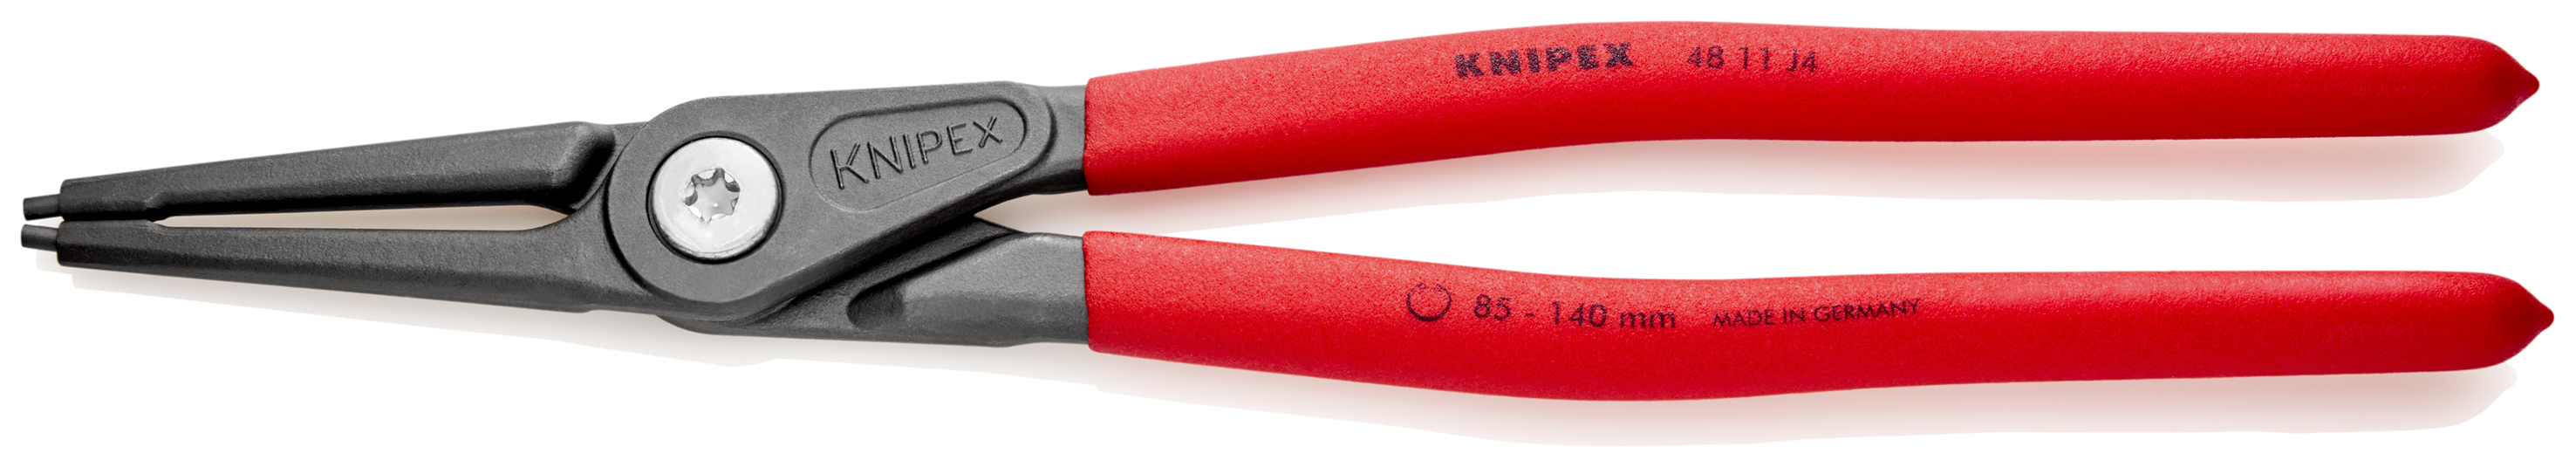 Knipex 4811J4 Cleste pentru inele de siguranta de interior, lungime 320 mm